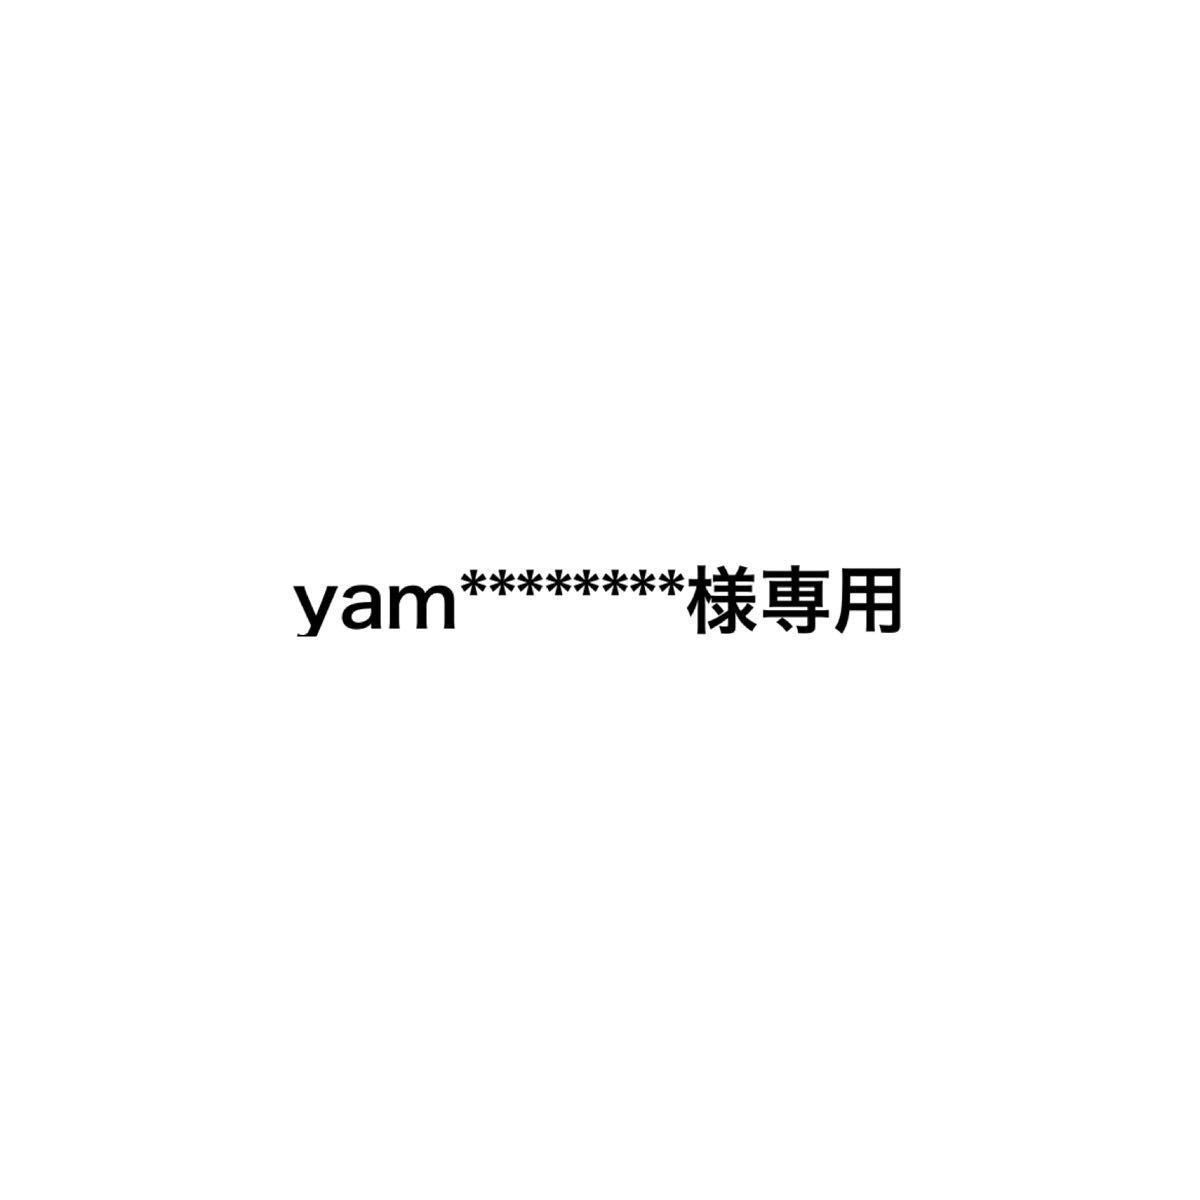 専用 yam様 - マタニティ